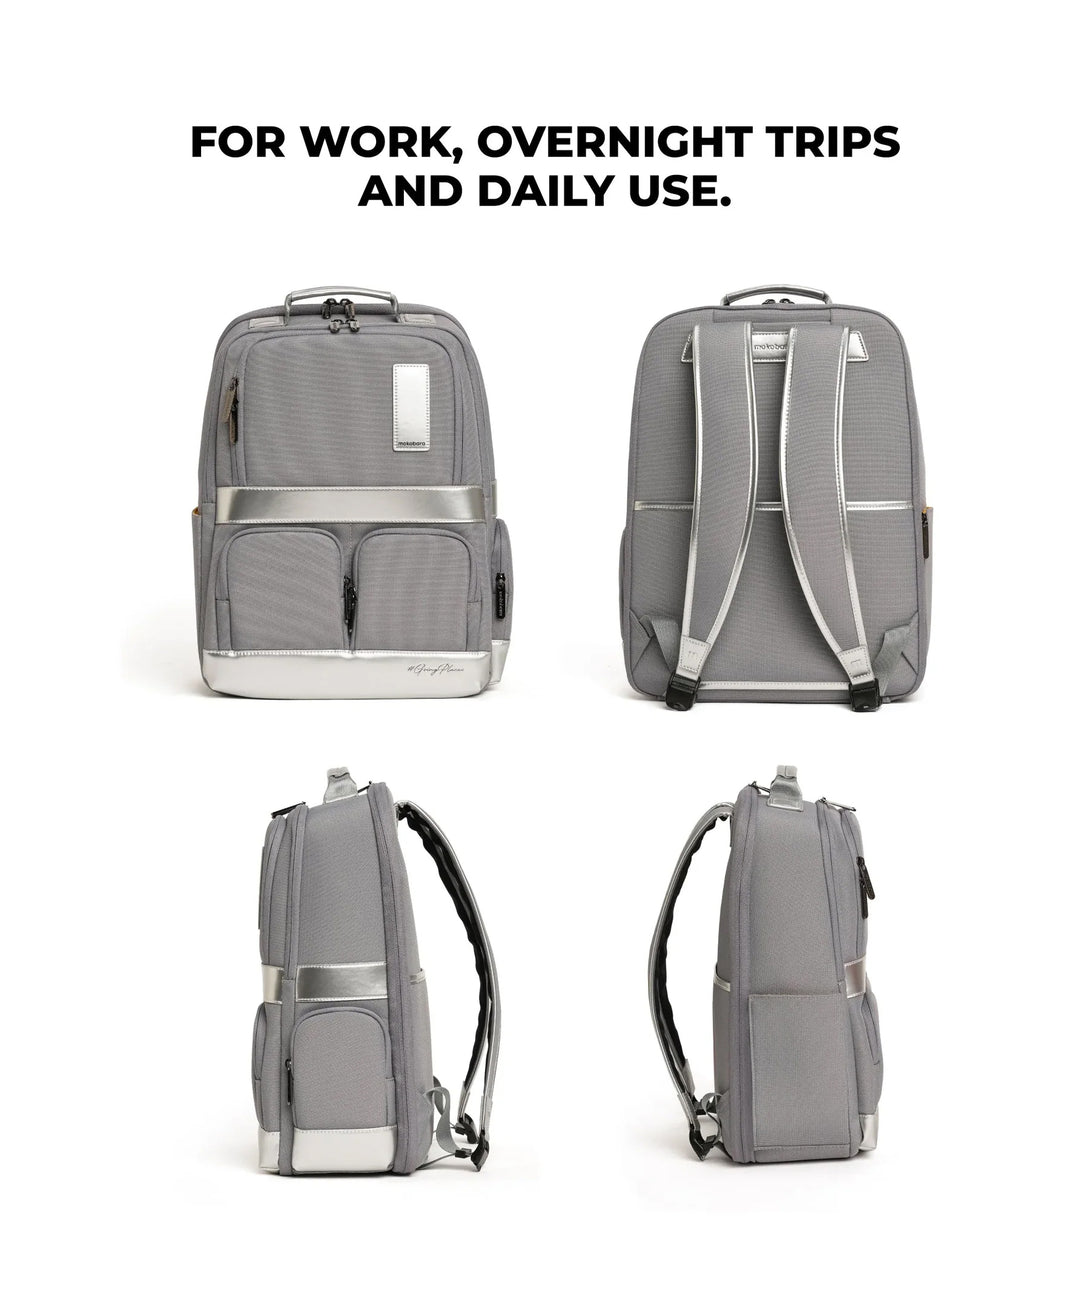 The Terra Work Backpack